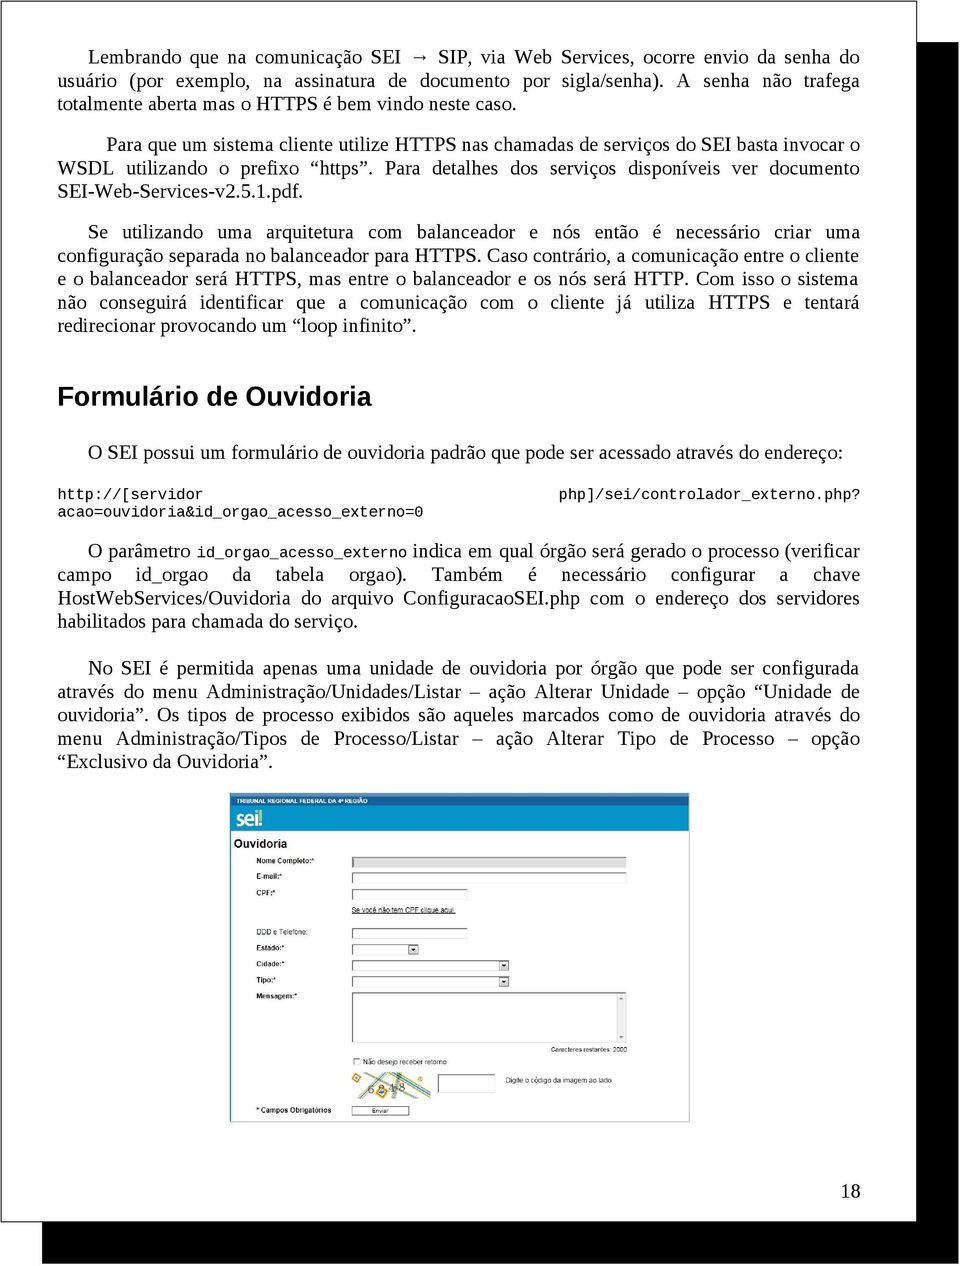 Para detalhes dos serviços disponíveis ver documento SEI-Web-Services-v2.5.1.pdf.